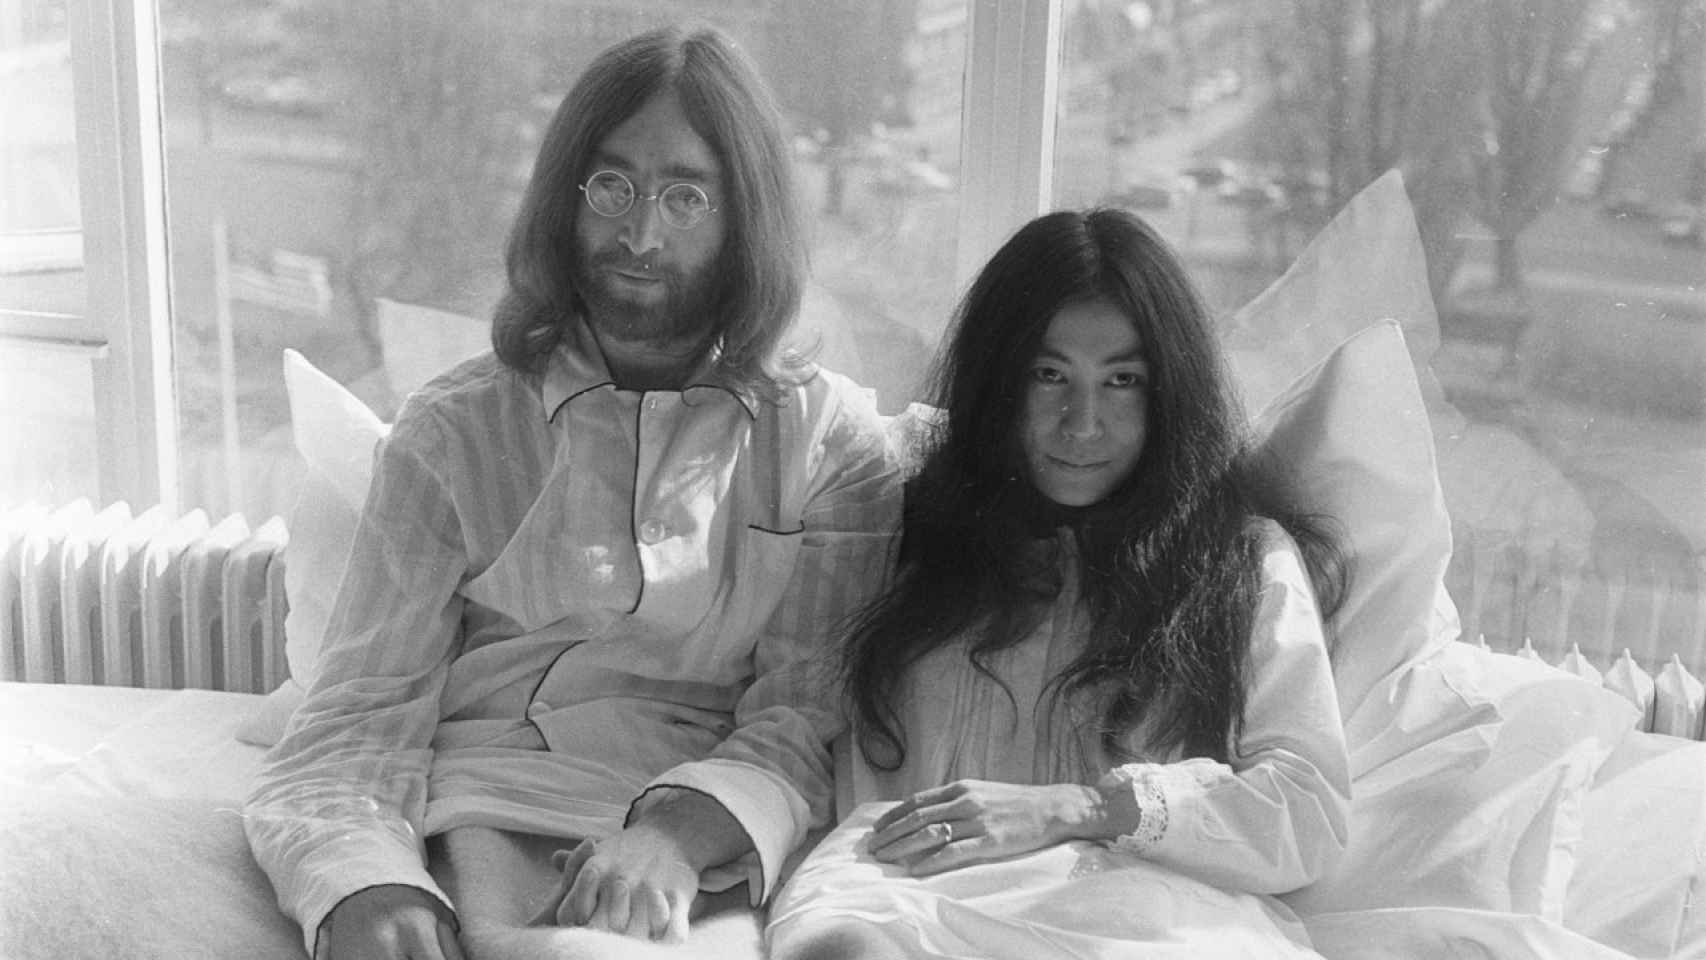 Mítica fotografía de Yoko Ono junto a John Lennon en la cama.